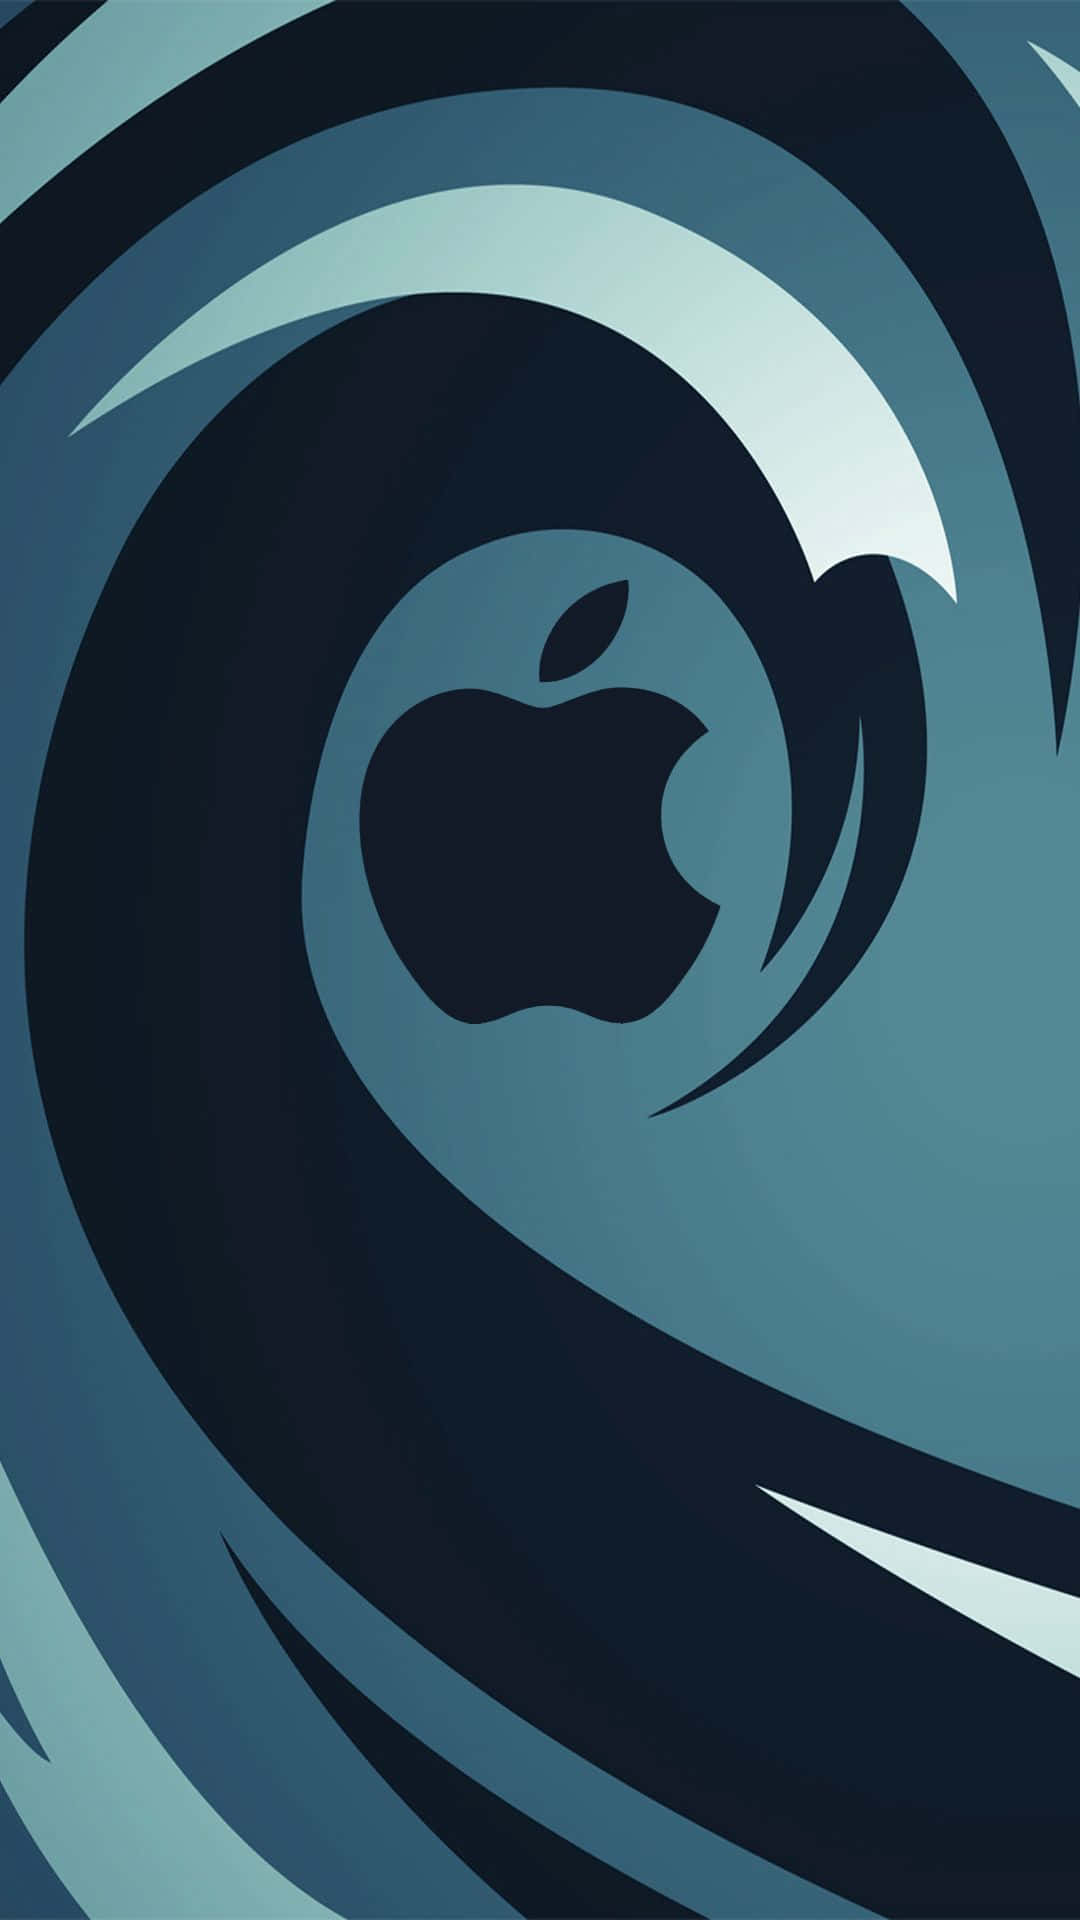 Elnuevo Logotipo De Apple Es Una Ola Con Una Ola En El Fondo. Fondo de pantalla